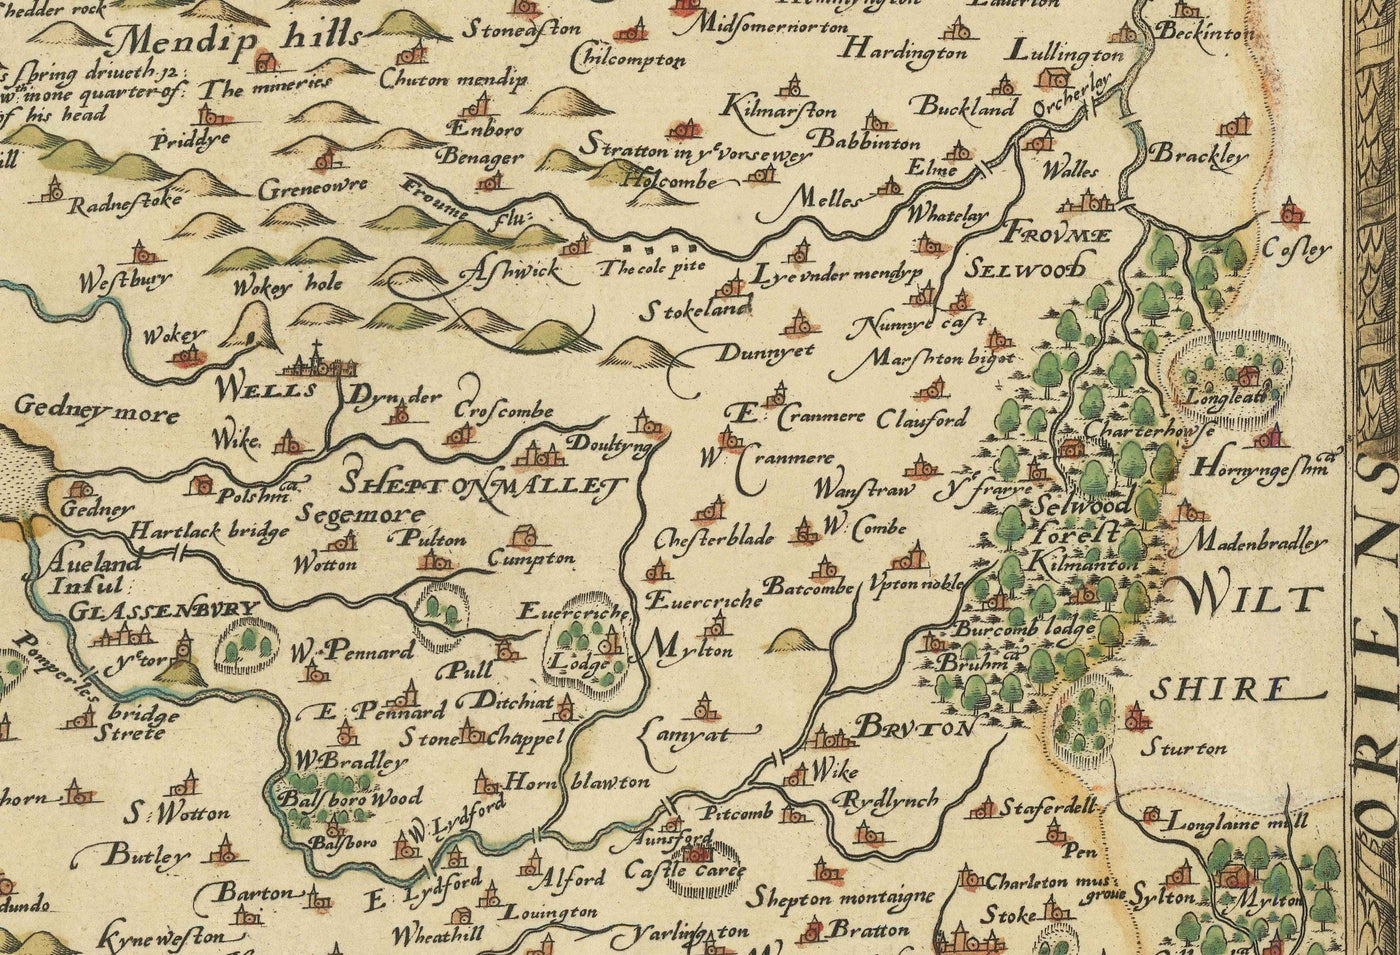 Raro mapa antiguo de Somerset, 1575 por Saxton - Bath, Bristol, West Country, Mendips, Weston-super-Mare